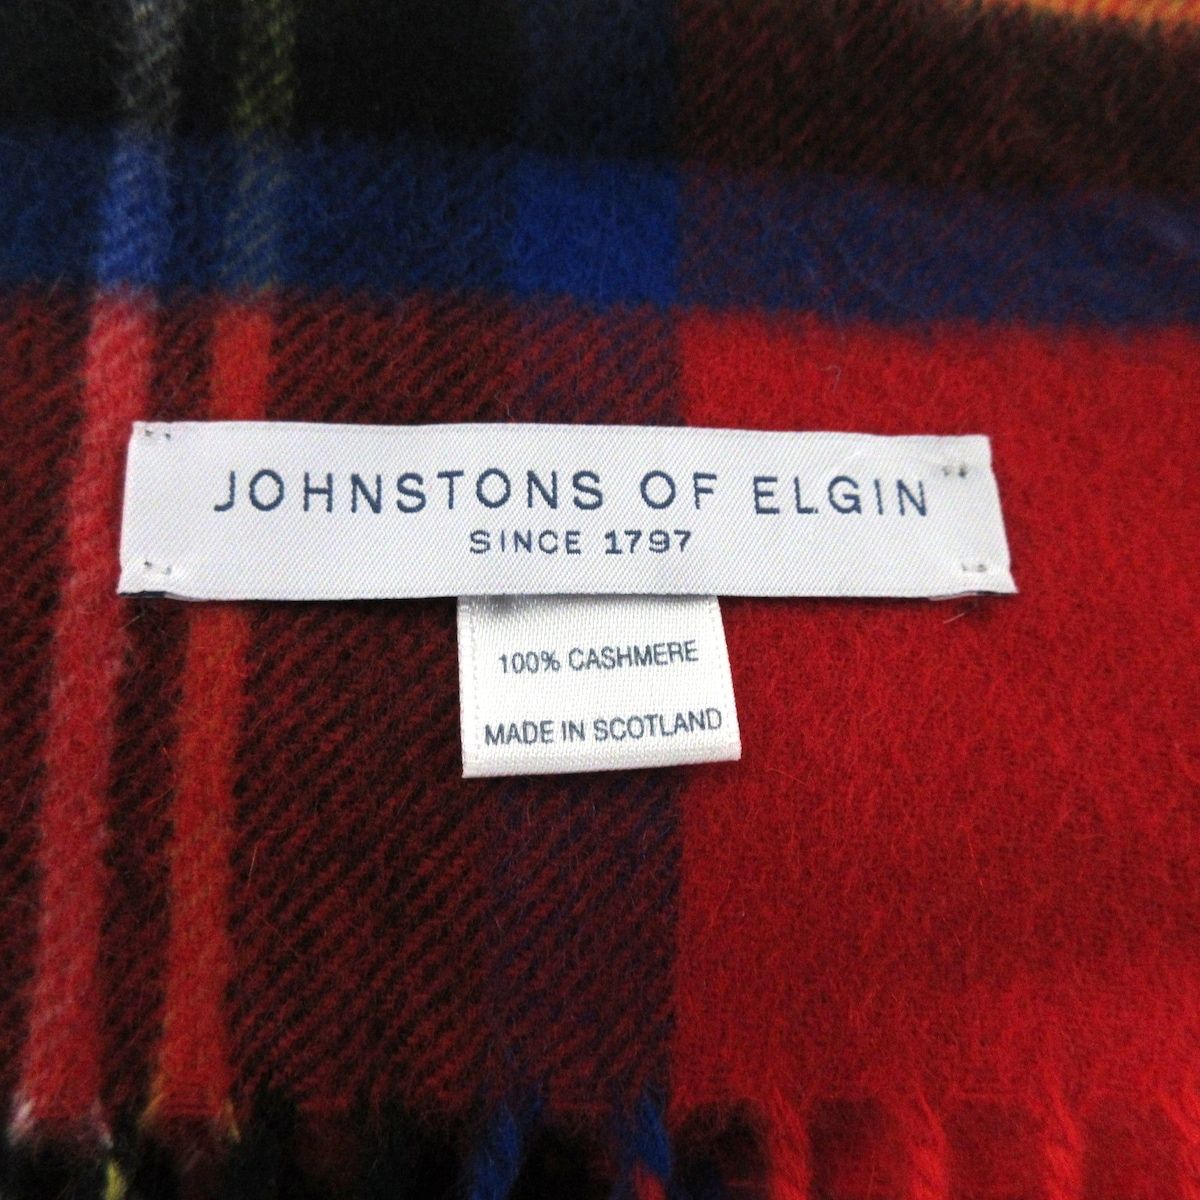 johnstons of elgin(ジョンストンズ) ストール(ショール) - レッド×ダークグリーン×マルチ チェック柄 カシミヤ